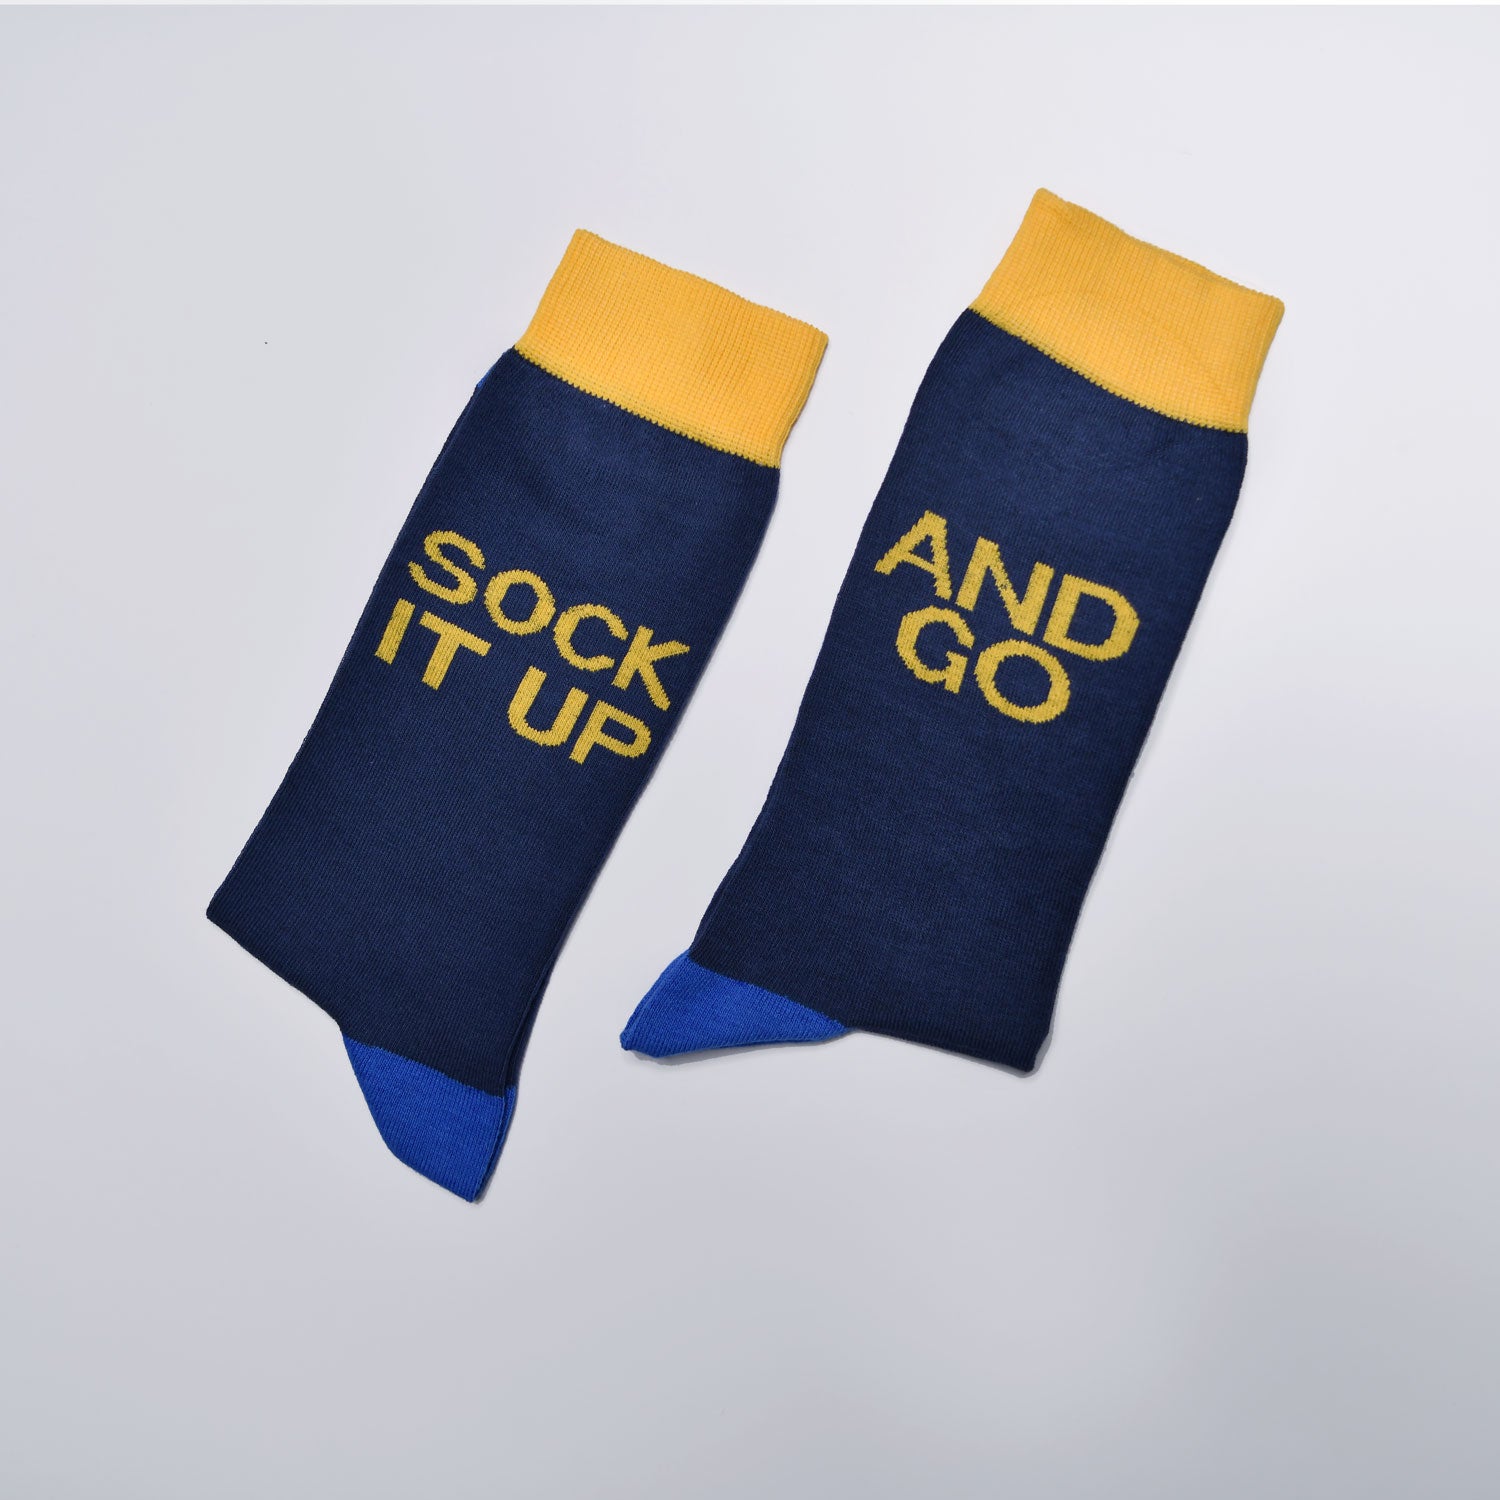 Sock It Up